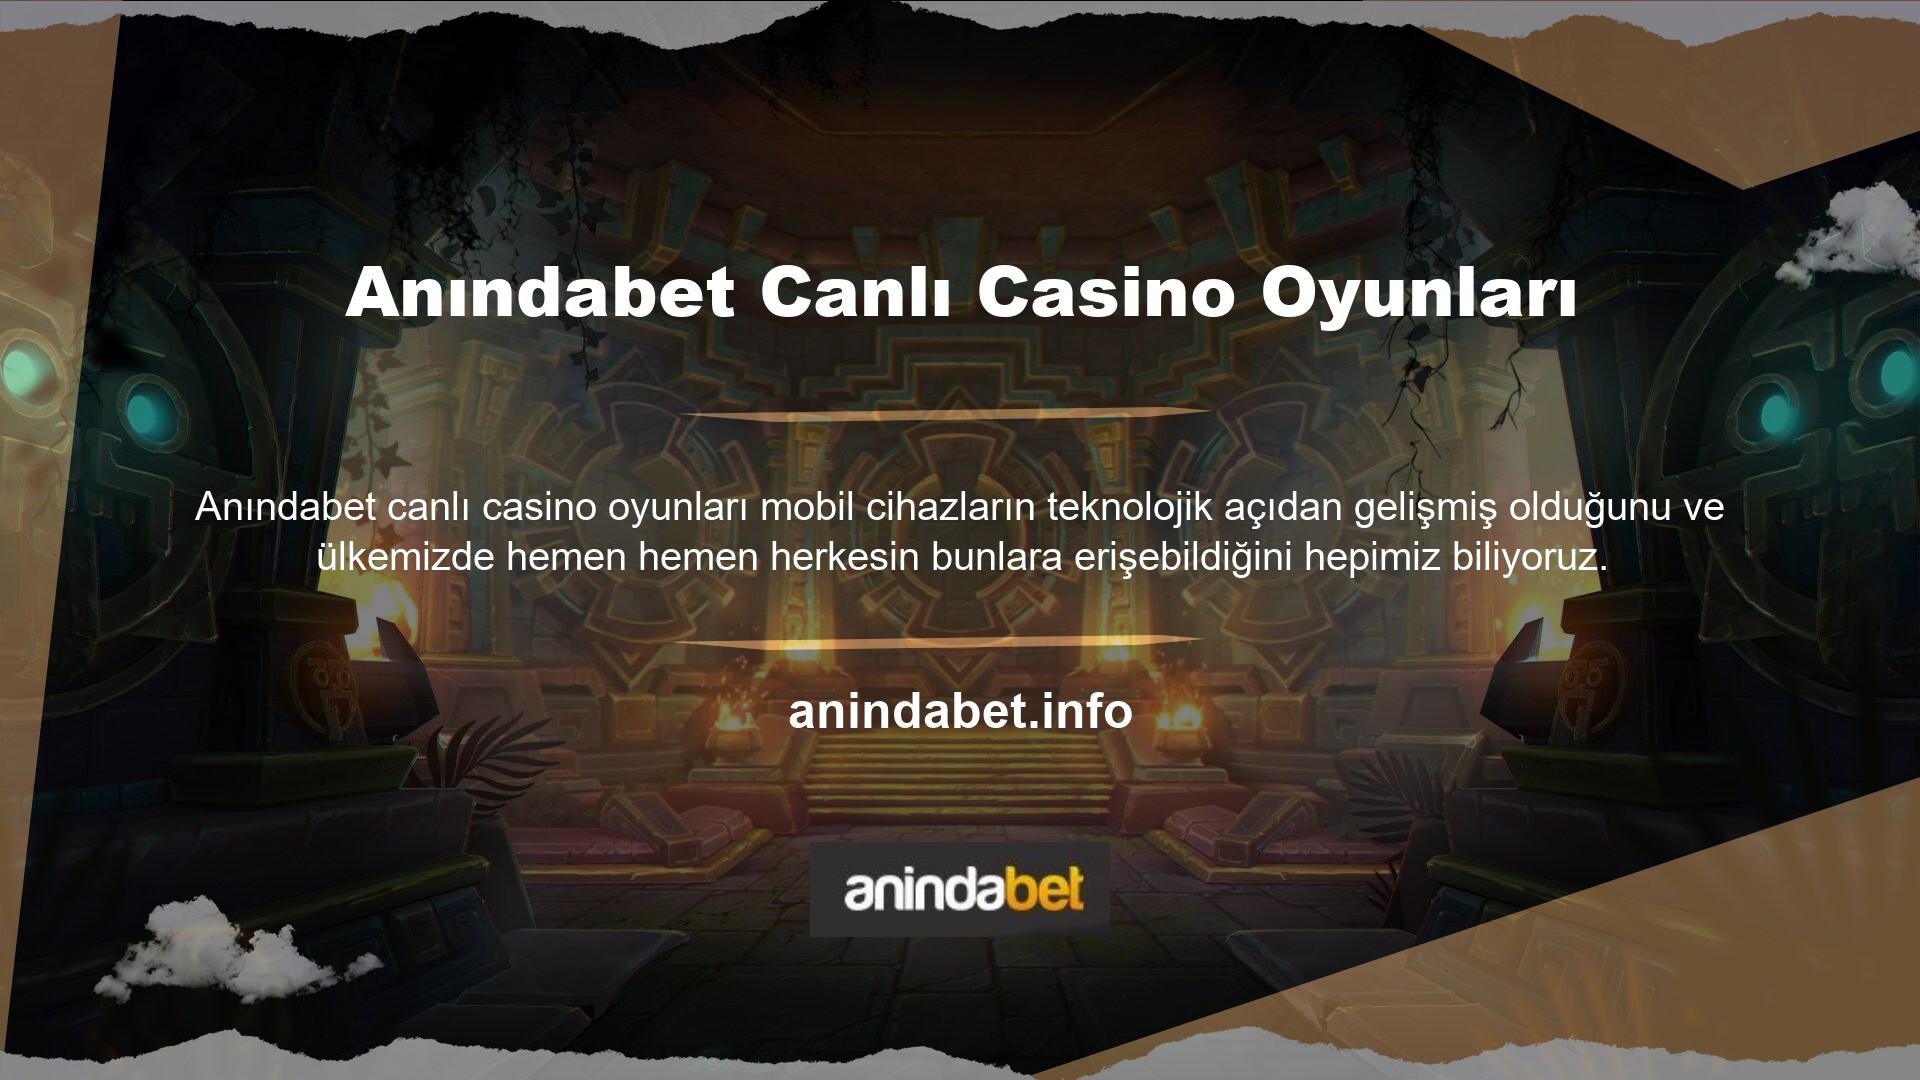 Türk casino tutkunları mobil casino sitelerine mobil ve tablet cihazlarından kolaylıkla ulaşabilmektedir